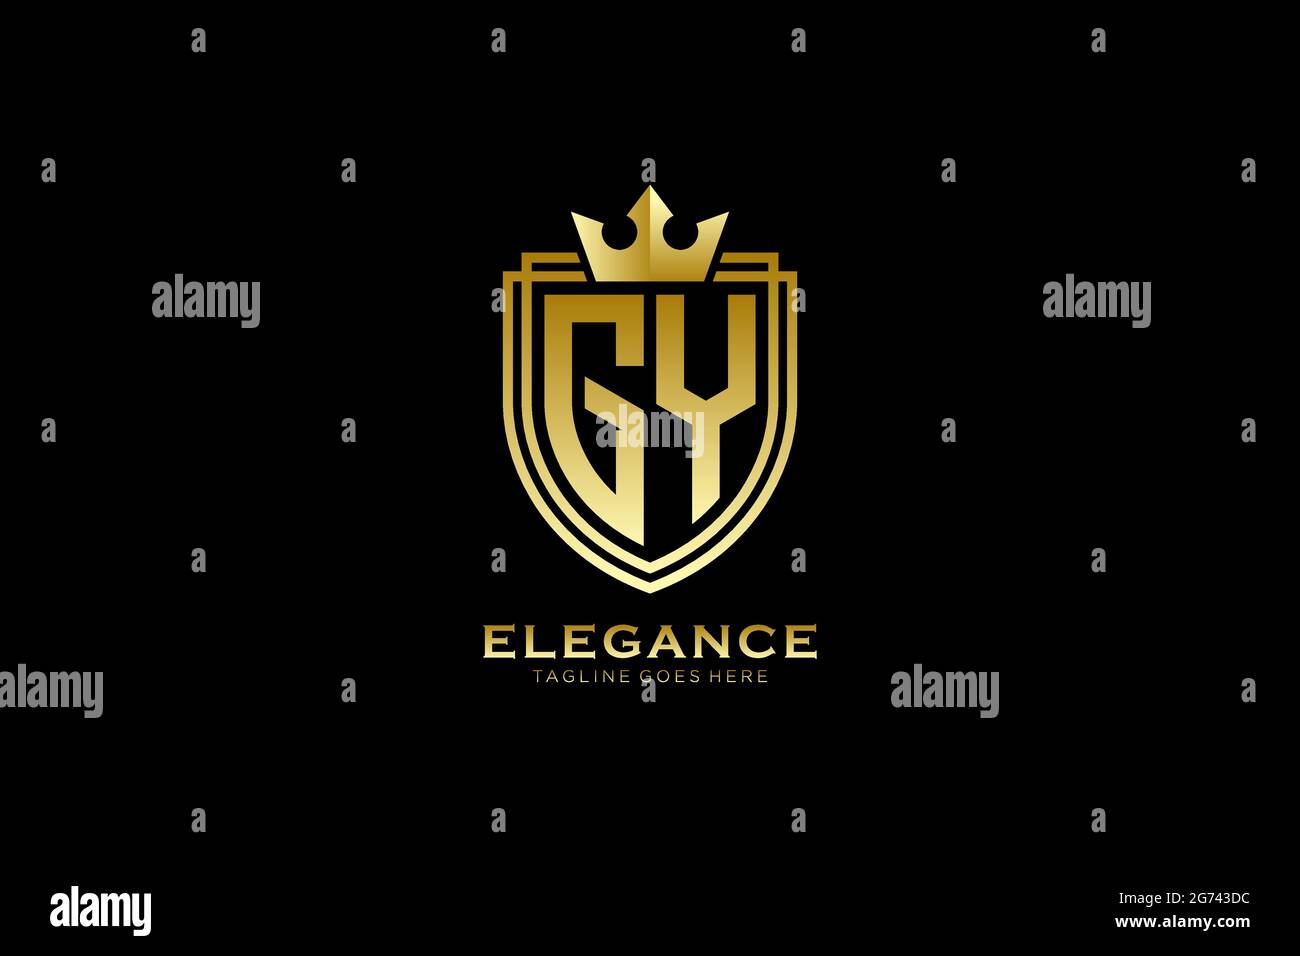 GY Elegantes Luxus-Monogramm-Logo oder Badge-Vorlage mit Rollen und königlicher Krone - perfekt für luxuriöse Branding-Projekte Stock Vektor